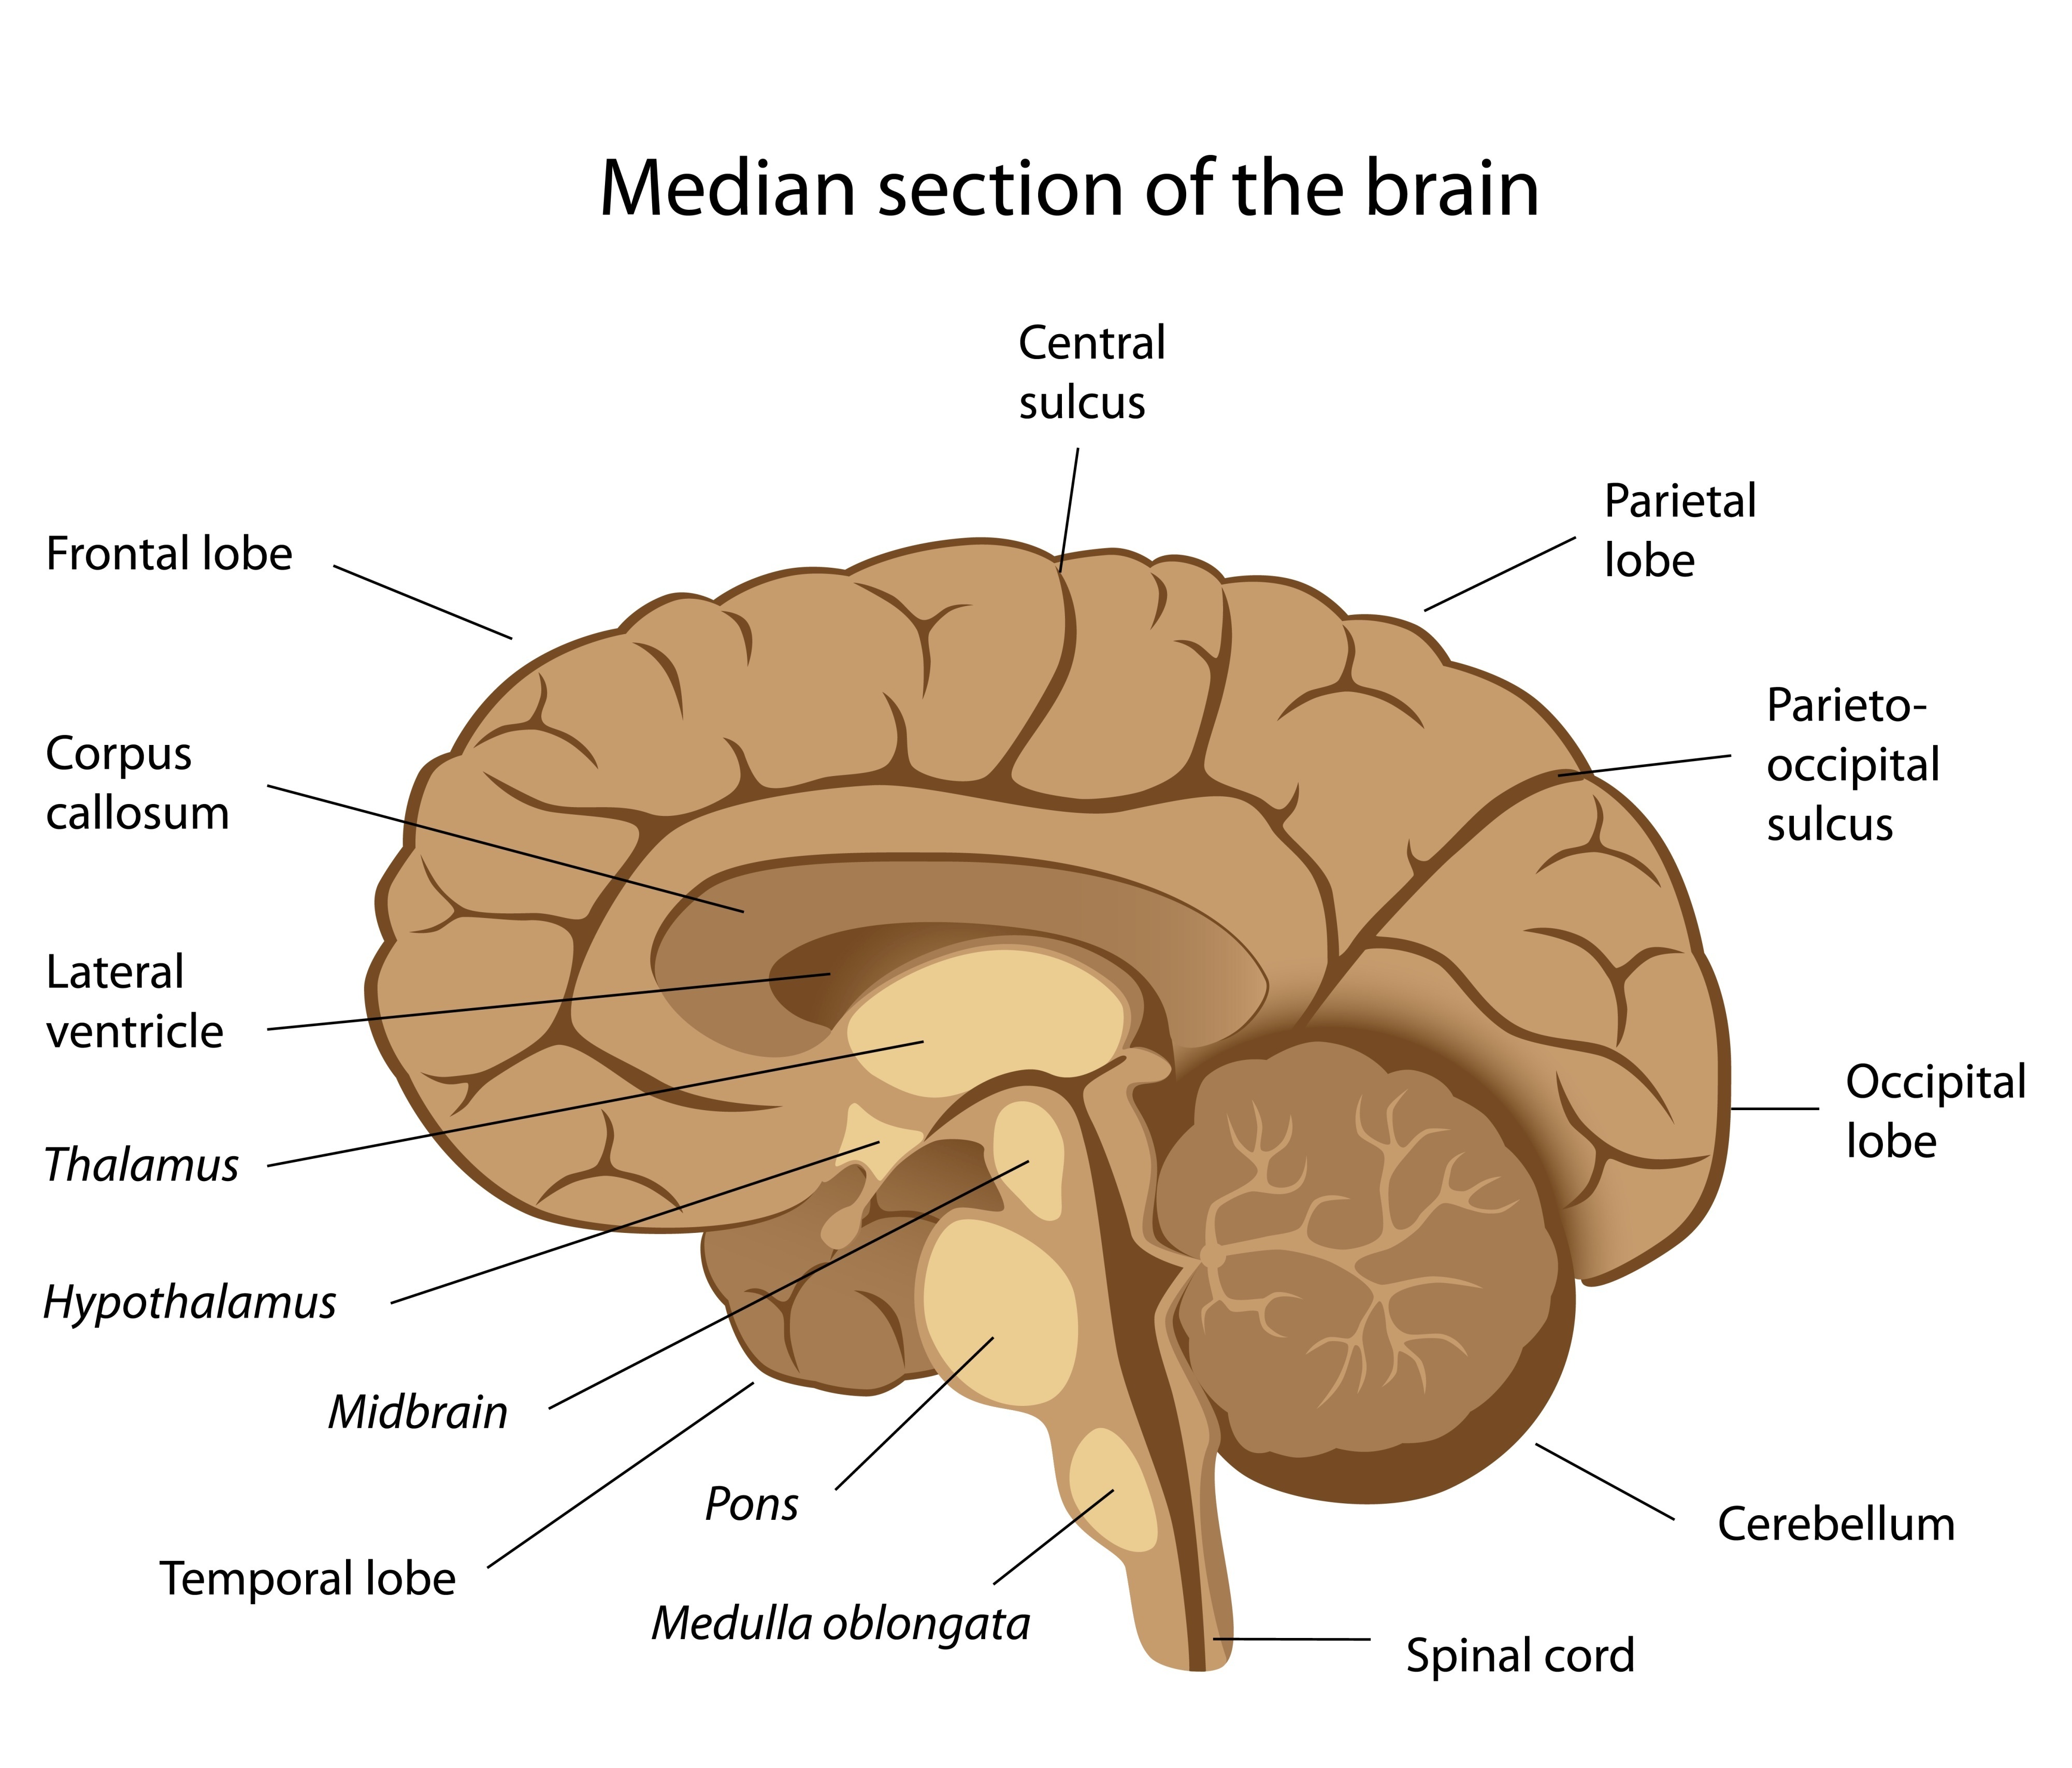 Free Brain Diagram, Download Free Brain Diagram png images ...